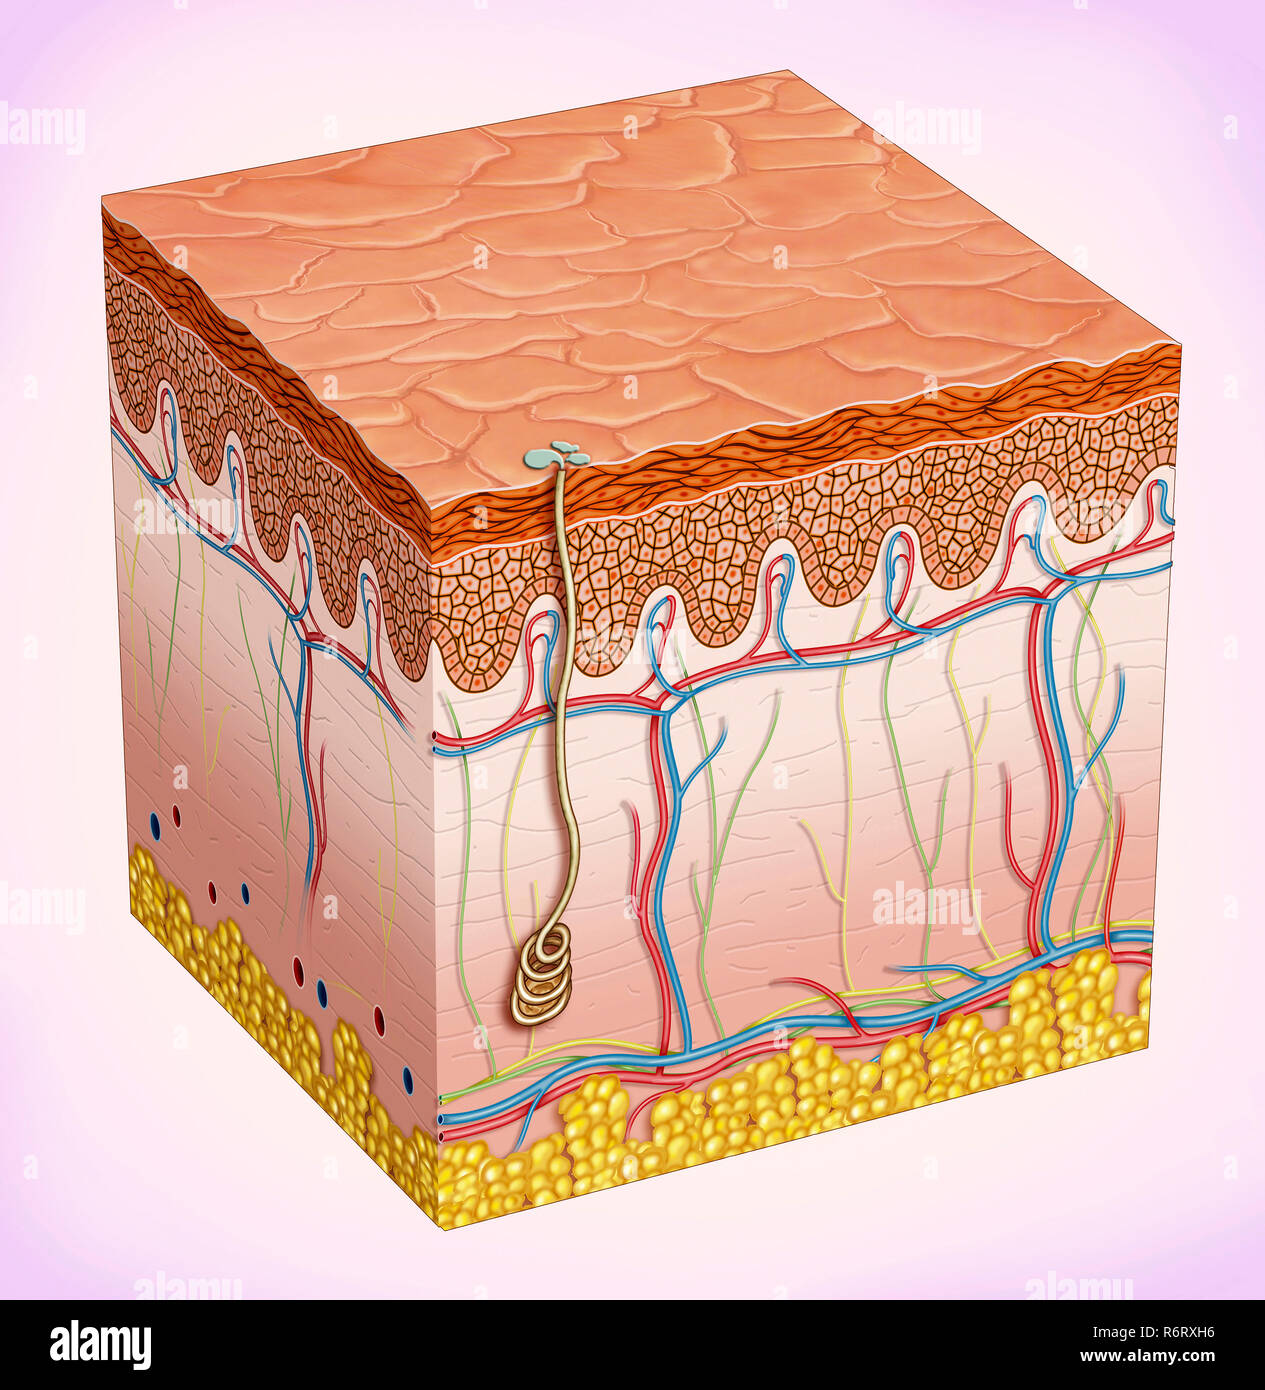 La peau est constituée de trois couches : épiderme, derme et tissu sous-cutané. Sa fonction est de protéger le corps de l'environnement. Banque D'Images